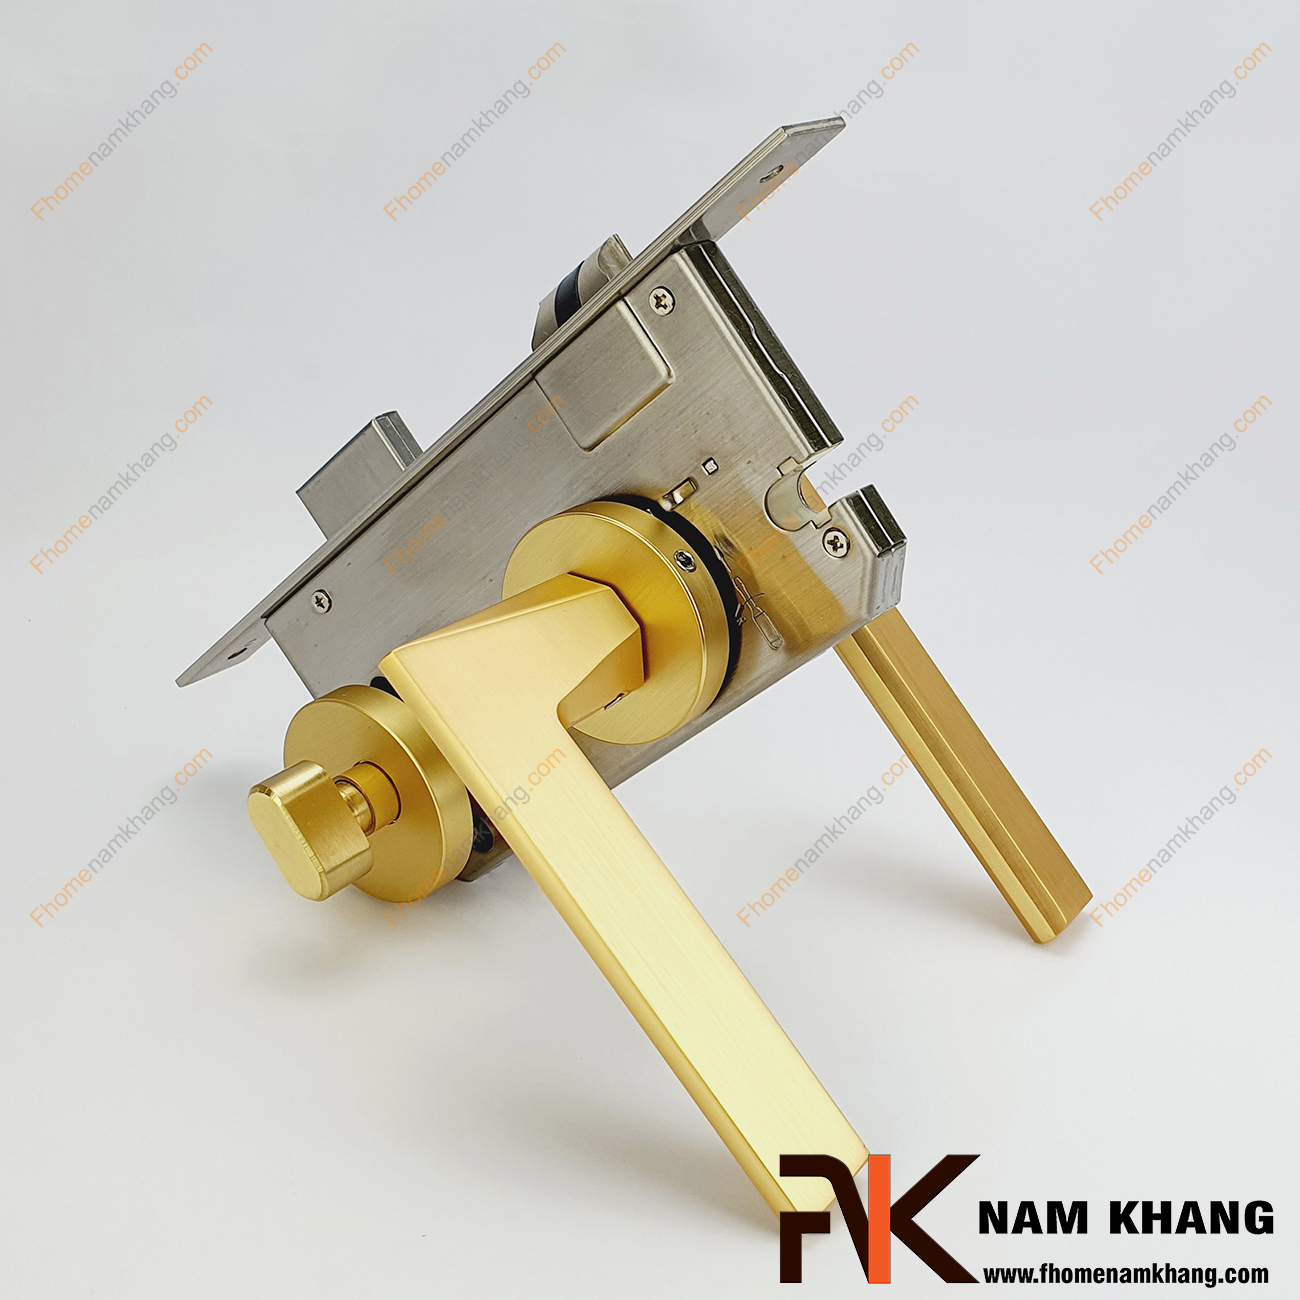 Khóa cửa phân thể dạng ốp tròn màu vàng mờ NK570-VM có thiết kế phần ốp khóa và tay gạt riêng biệt, khá nhỏ gọn và tạo được sự nổi bật độc đáo của một dòng khóa cửa.